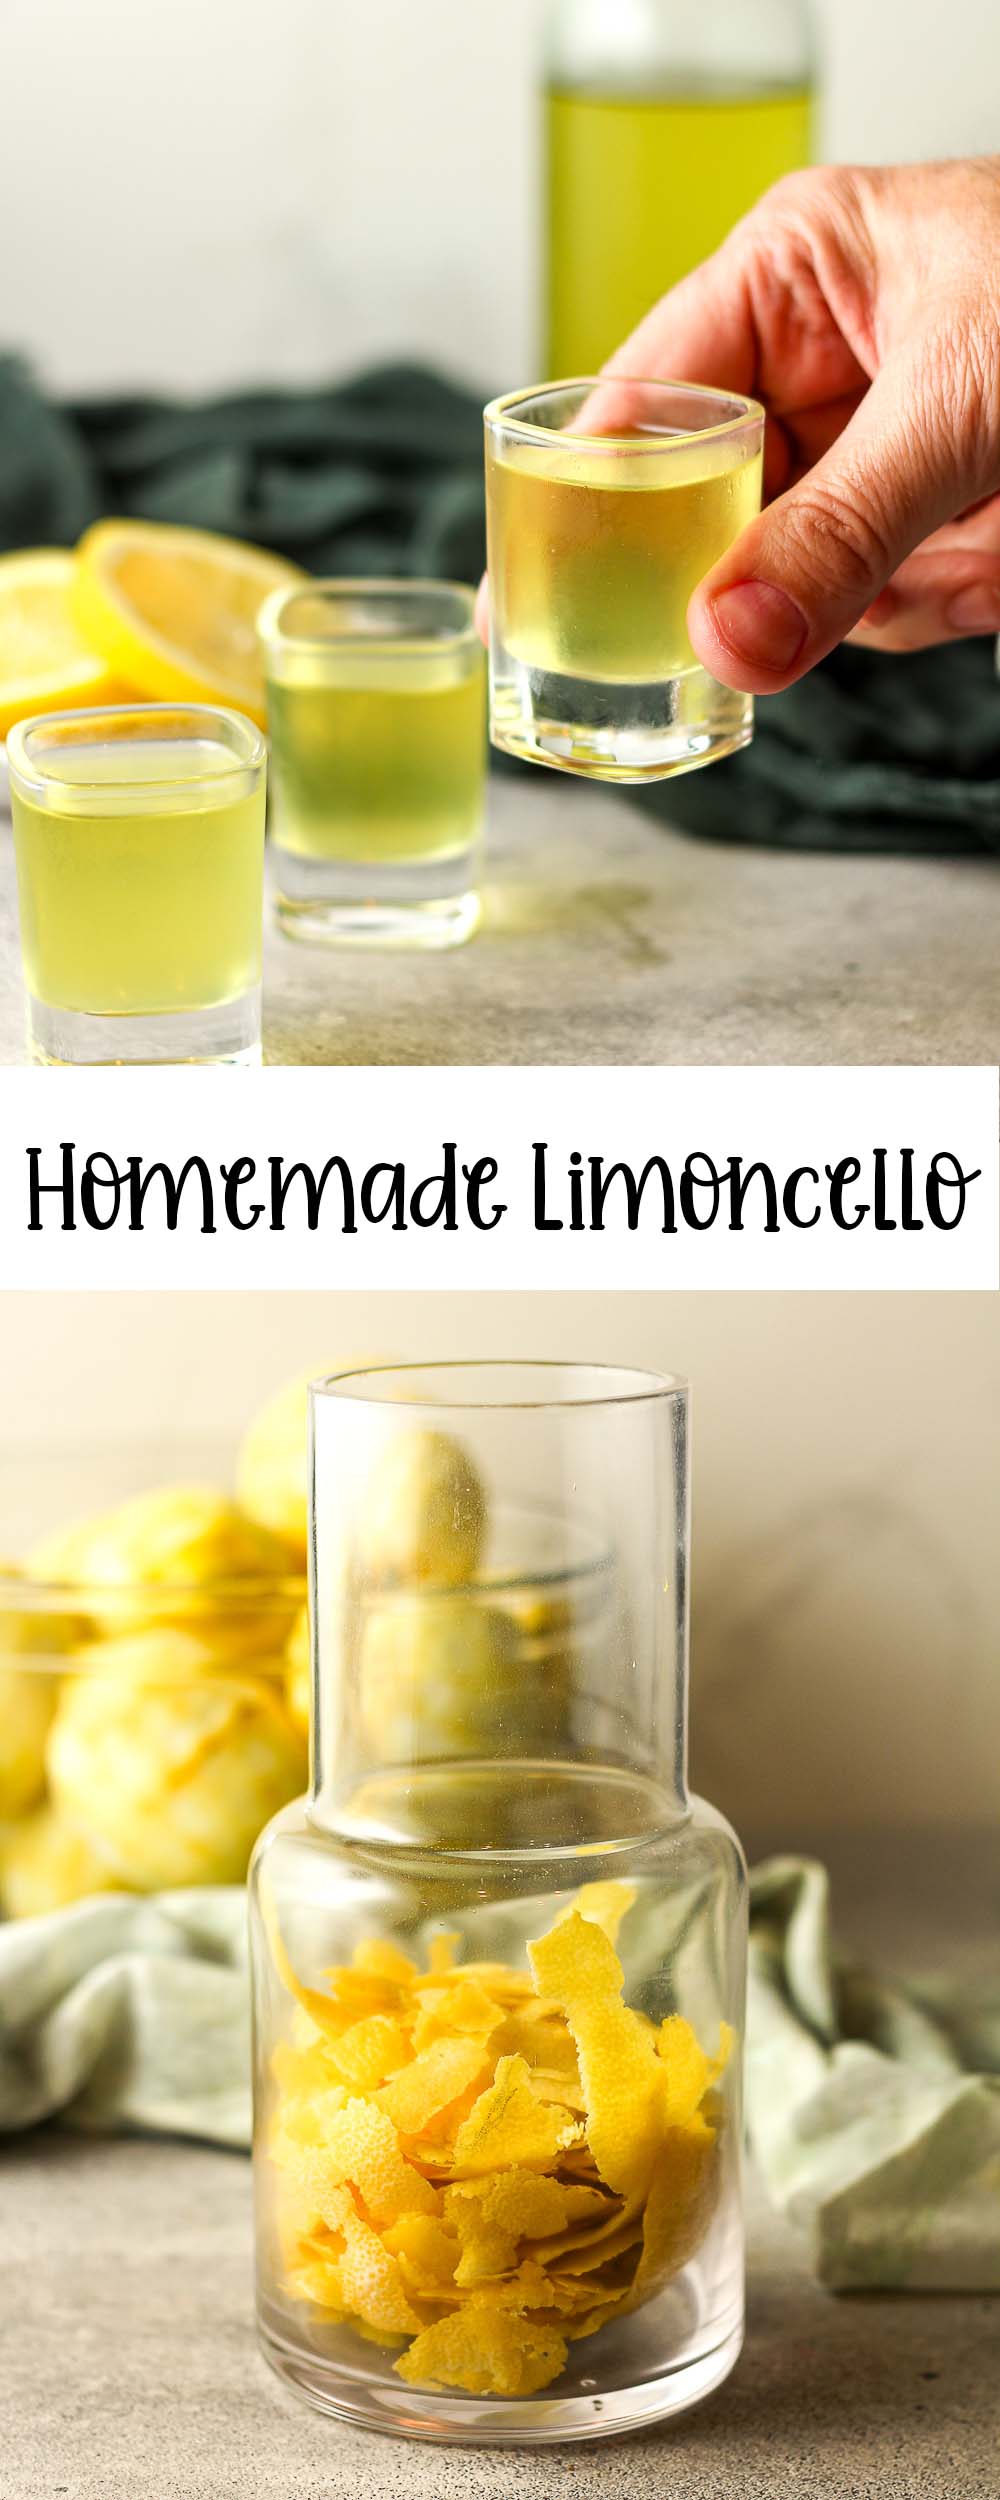 Two photos of homemade limoncello.